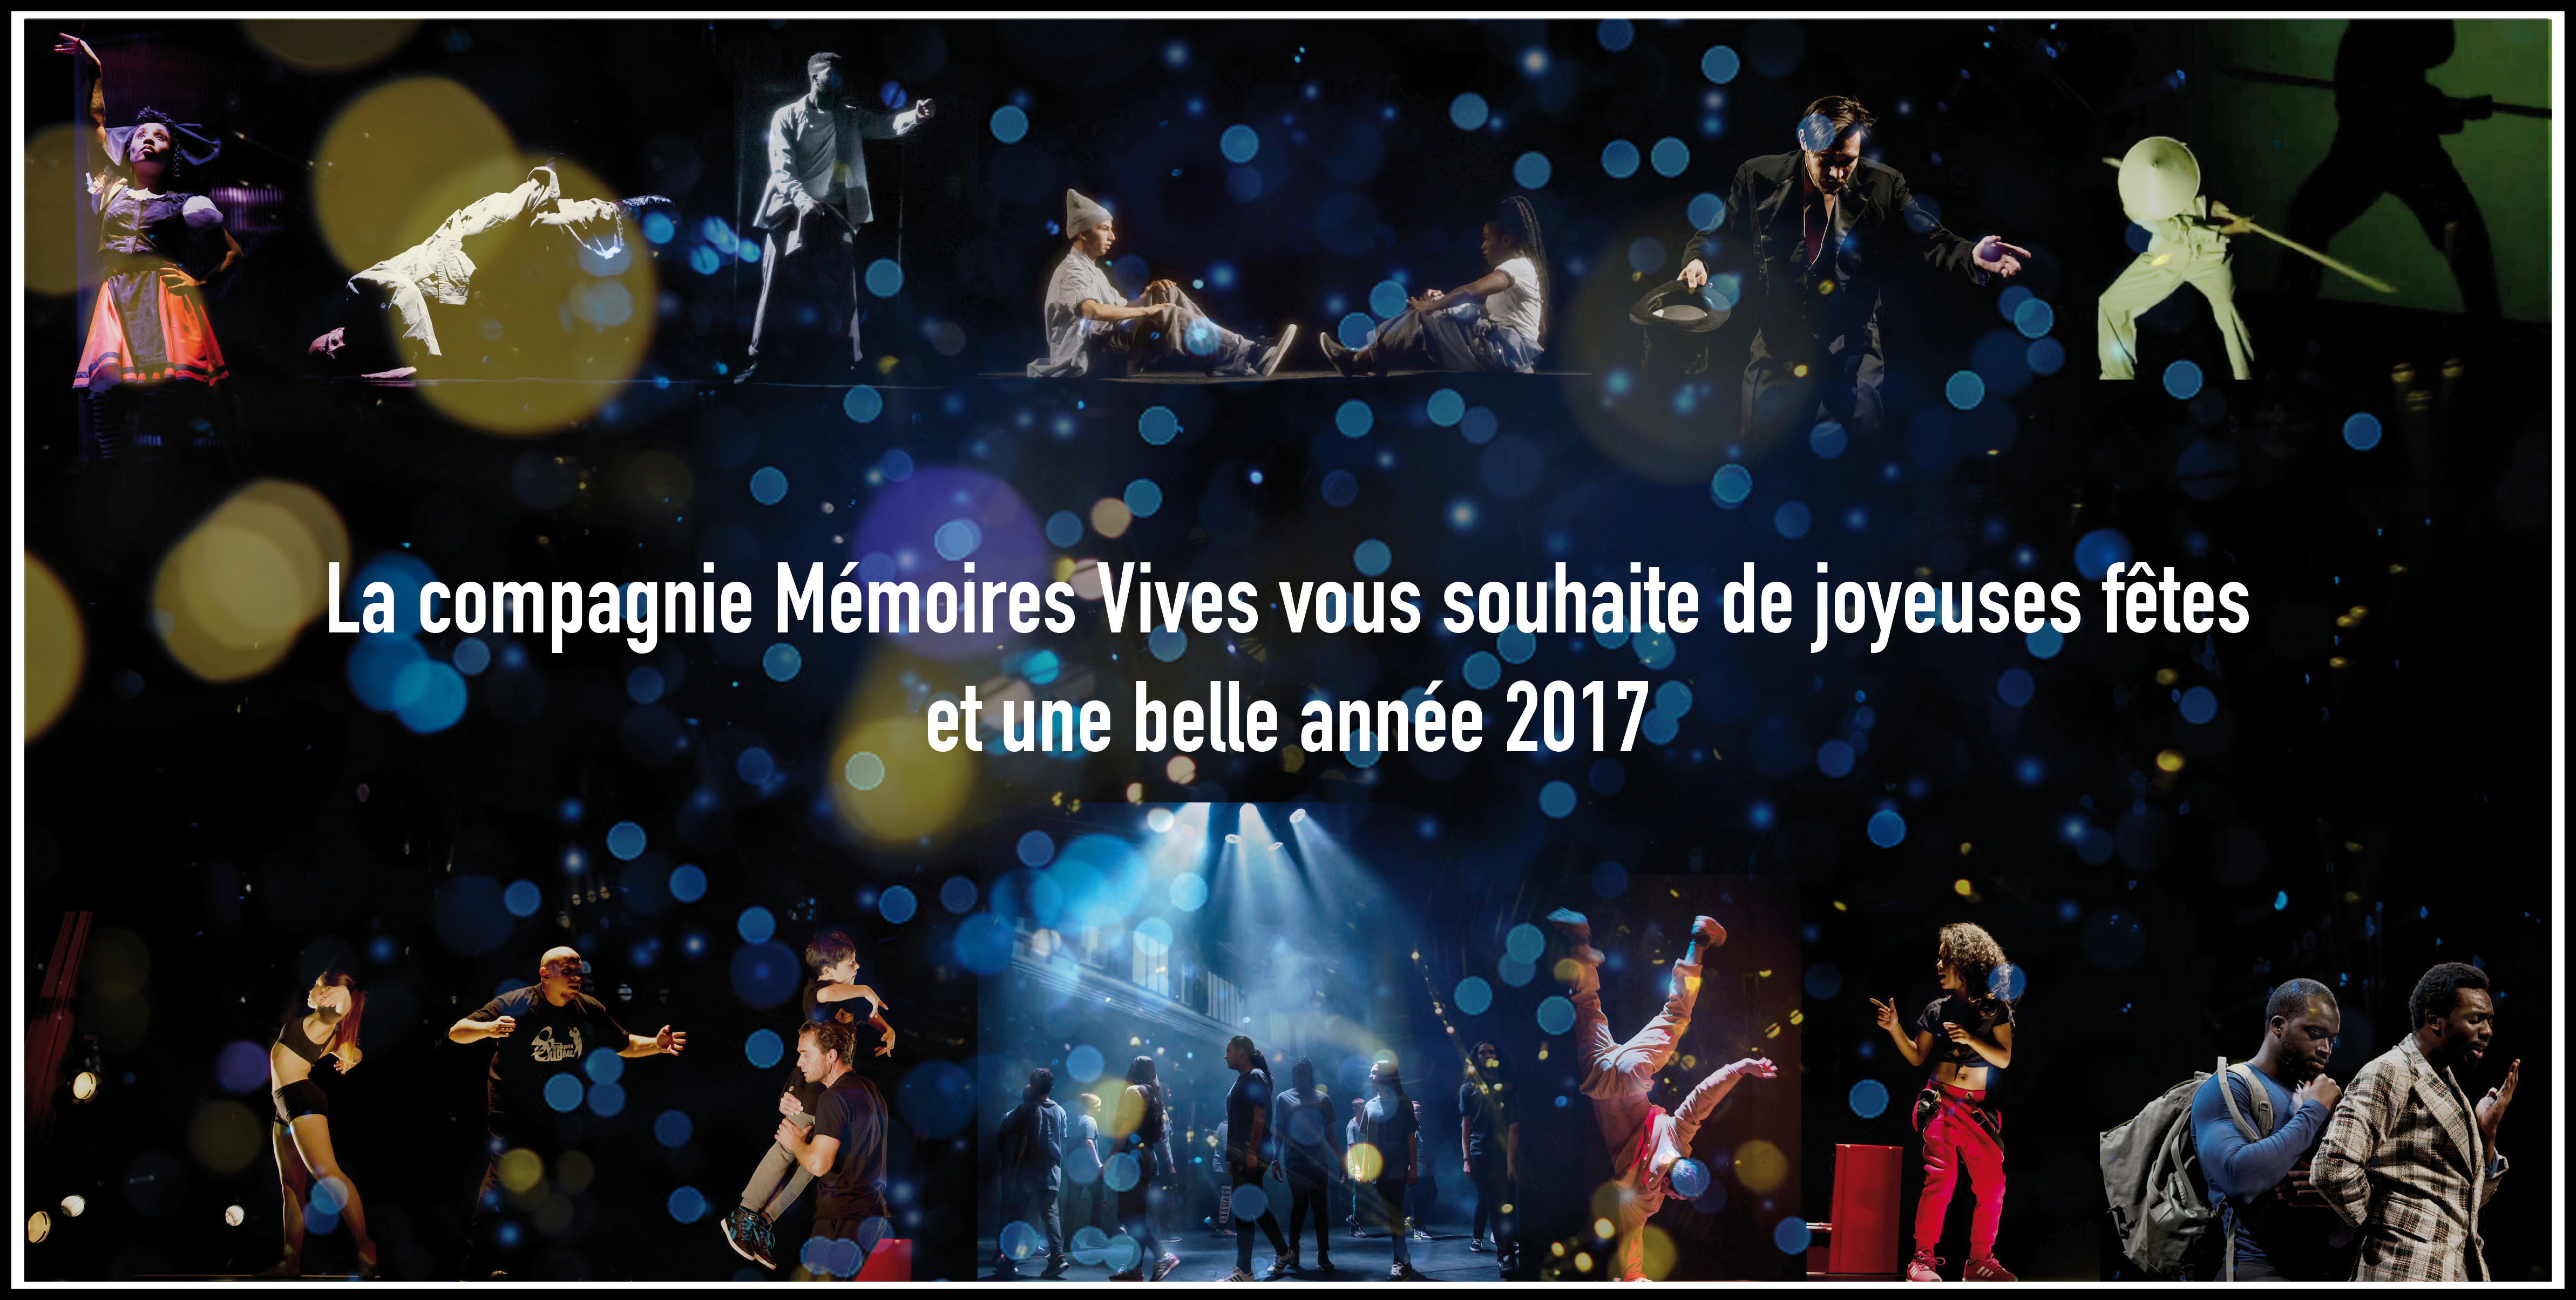 La compagnie Mémoires Vives vous souhaite une belle année 2017